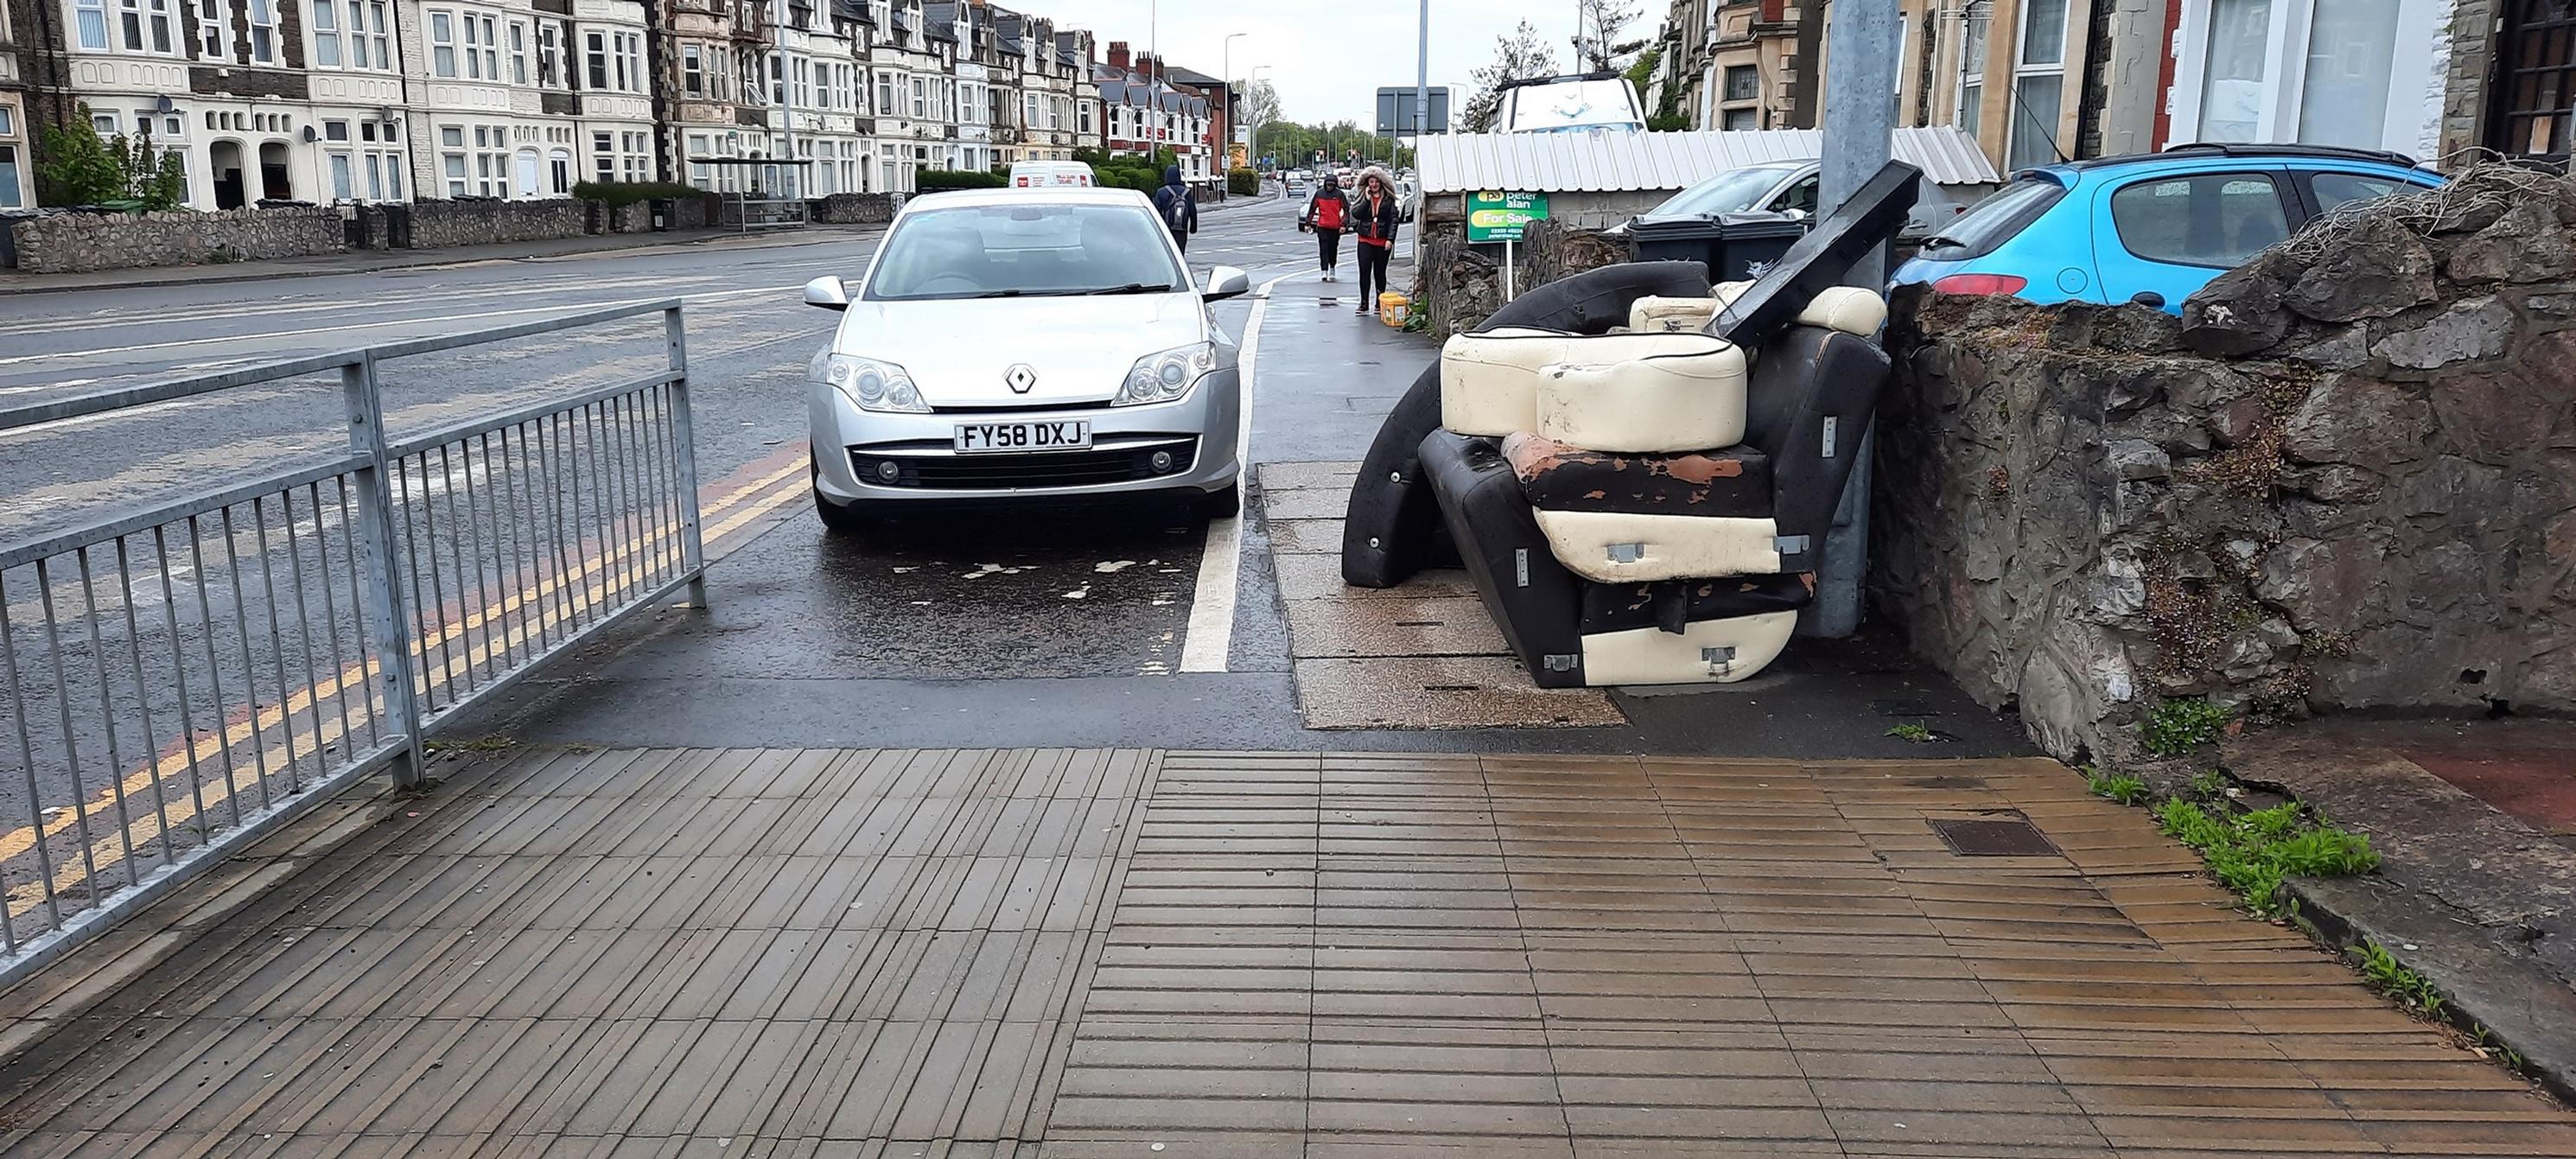 Rubbish blocking a pavement